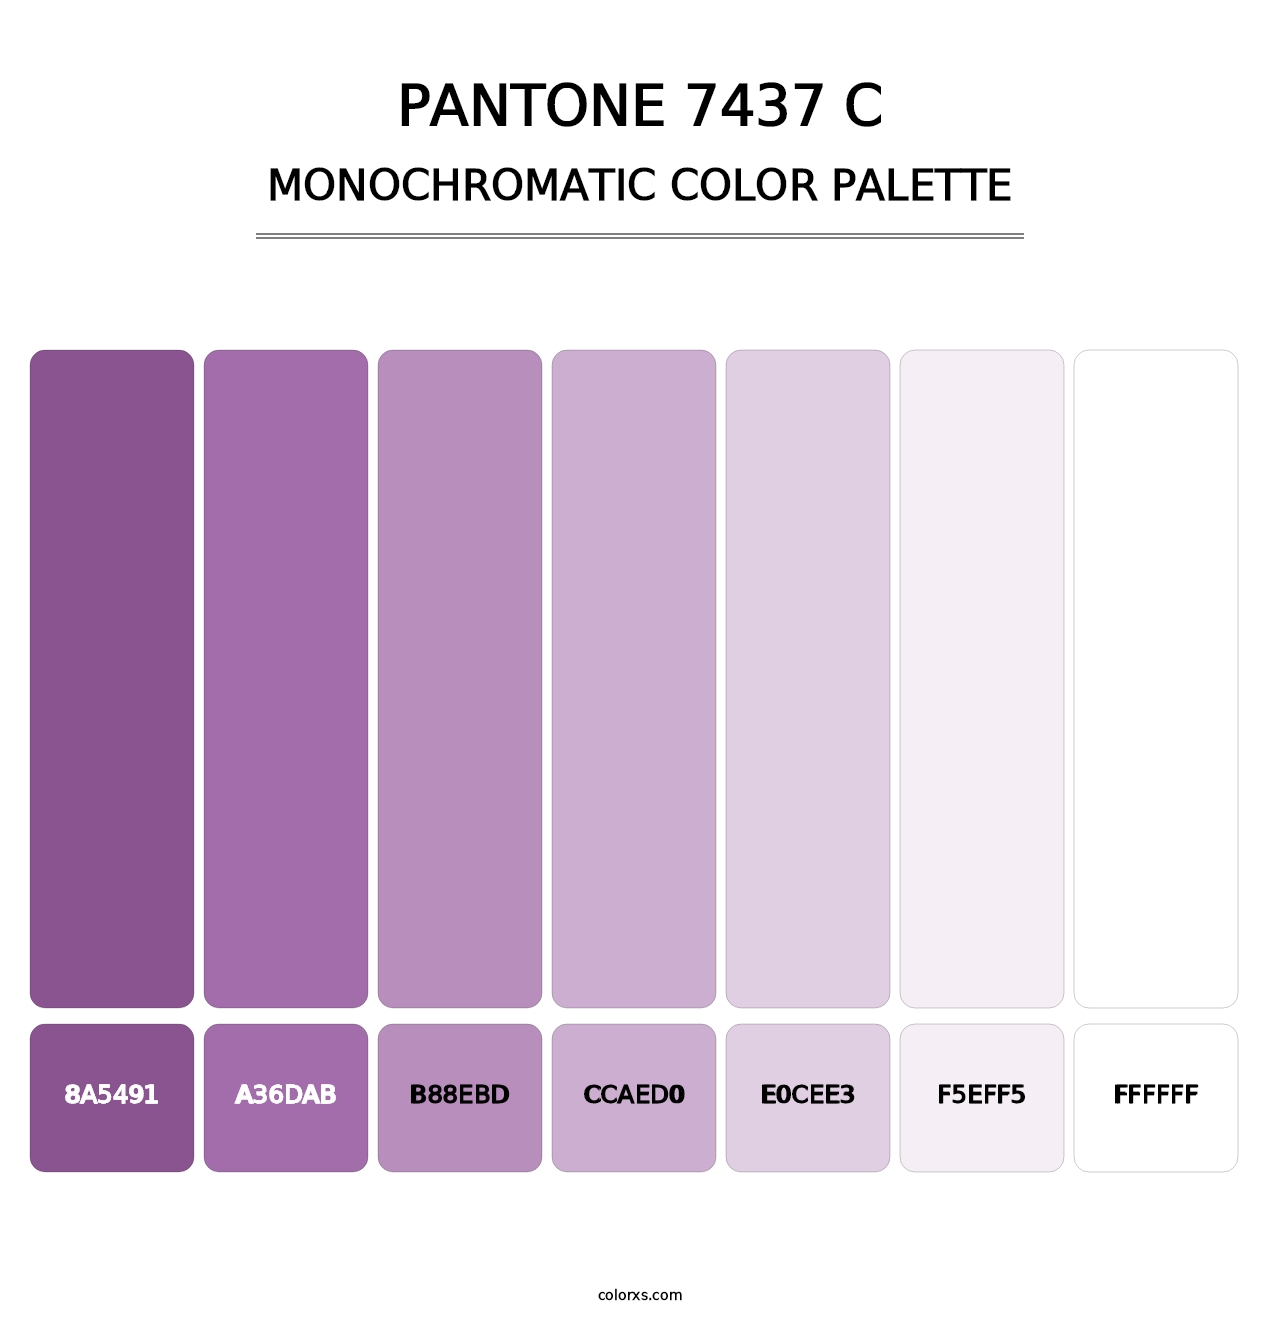 PANTONE 7437 C - Monochromatic Color Palette